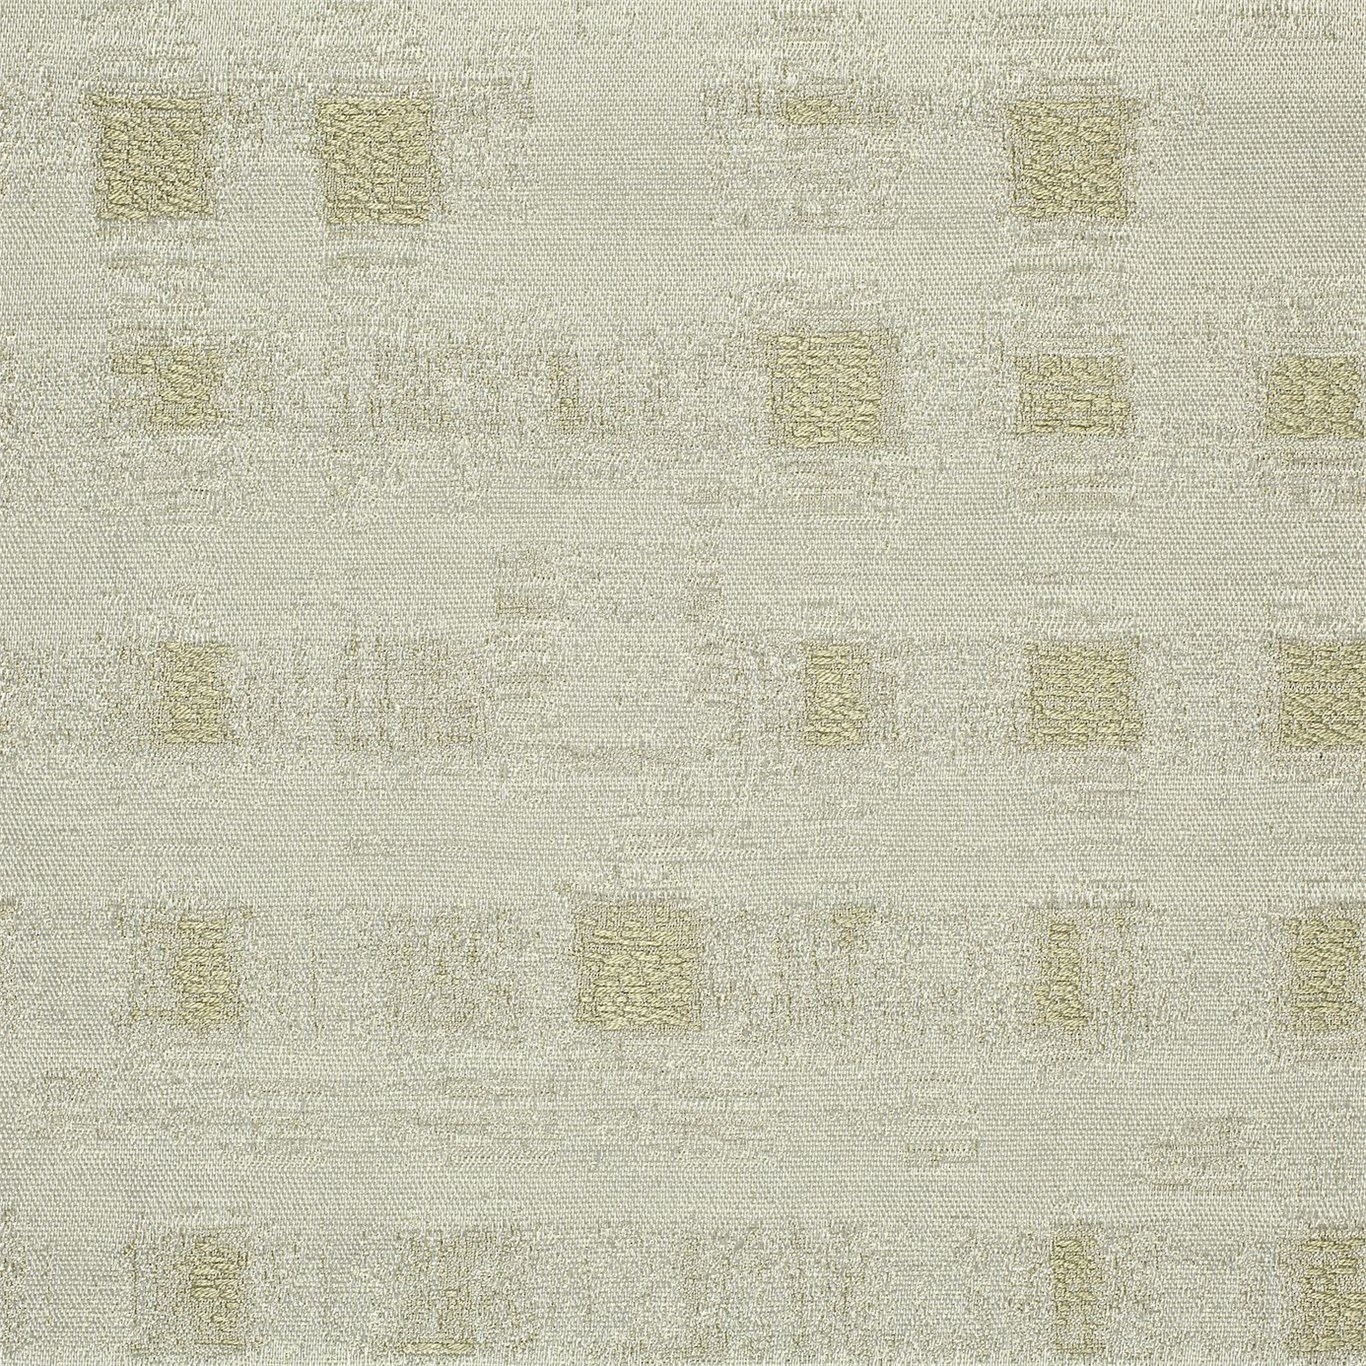 Английская ткань Harlequin, коллекция Impasto, артикул 130606